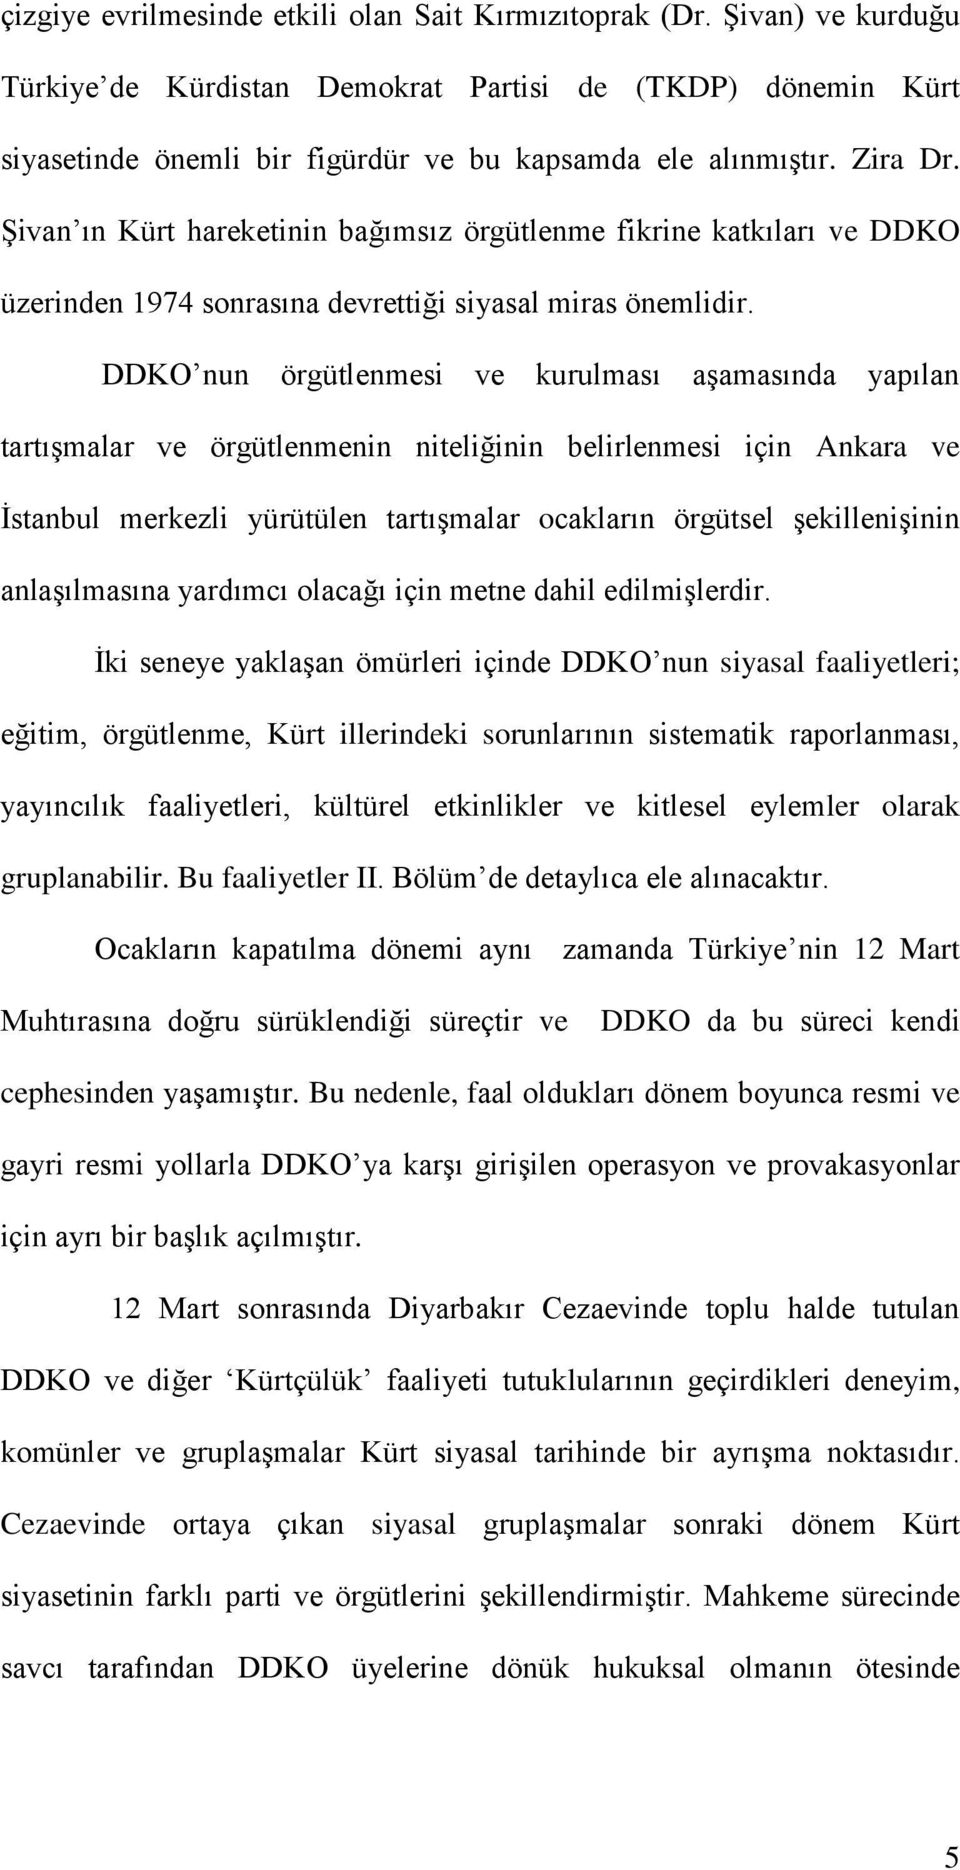 DDKO nun örgütlenmesi ve kurulması aşamasında yapılan tartışmalar ve örgütlenmenin niteliğinin belirlenmesi için Ankara ve İstanbul merkezli yürütülen tartışmalar ocakların örgütsel şekillenişinin